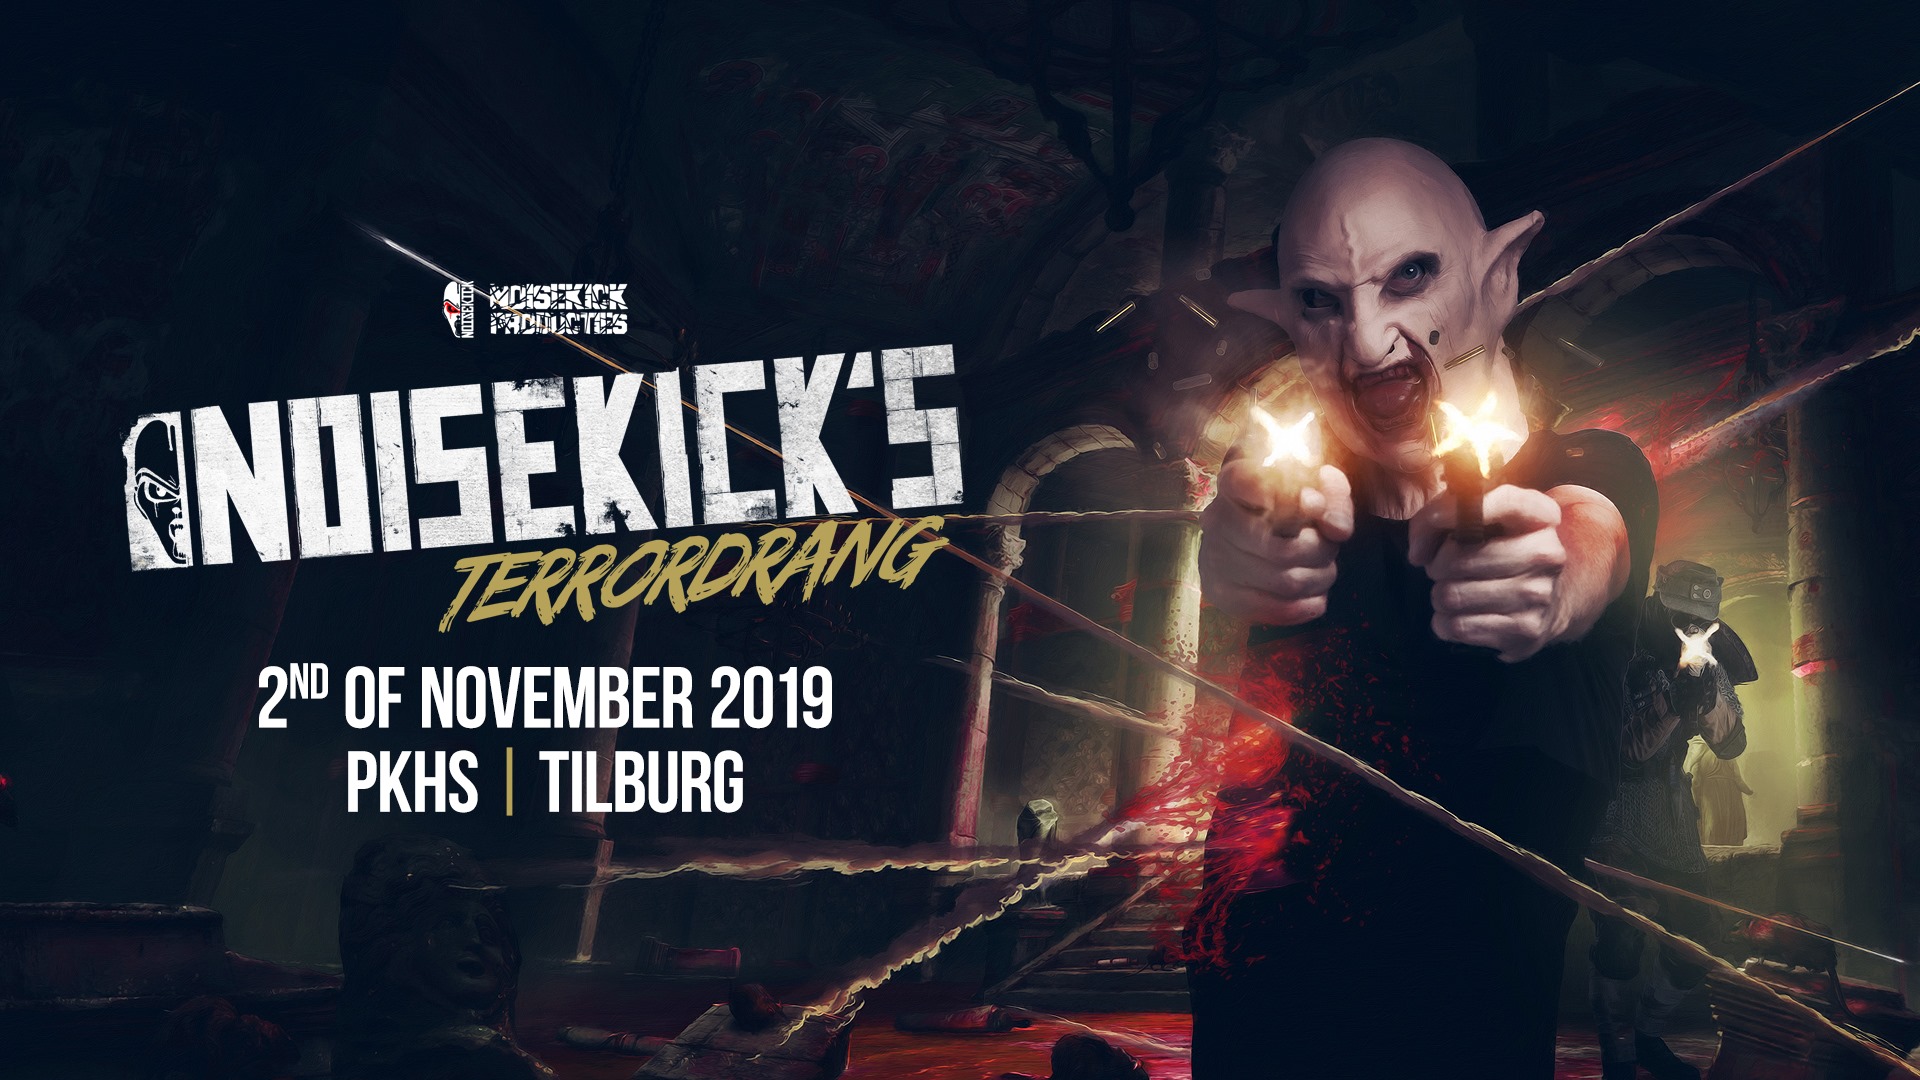 Noisekick's Terrordrang 2019